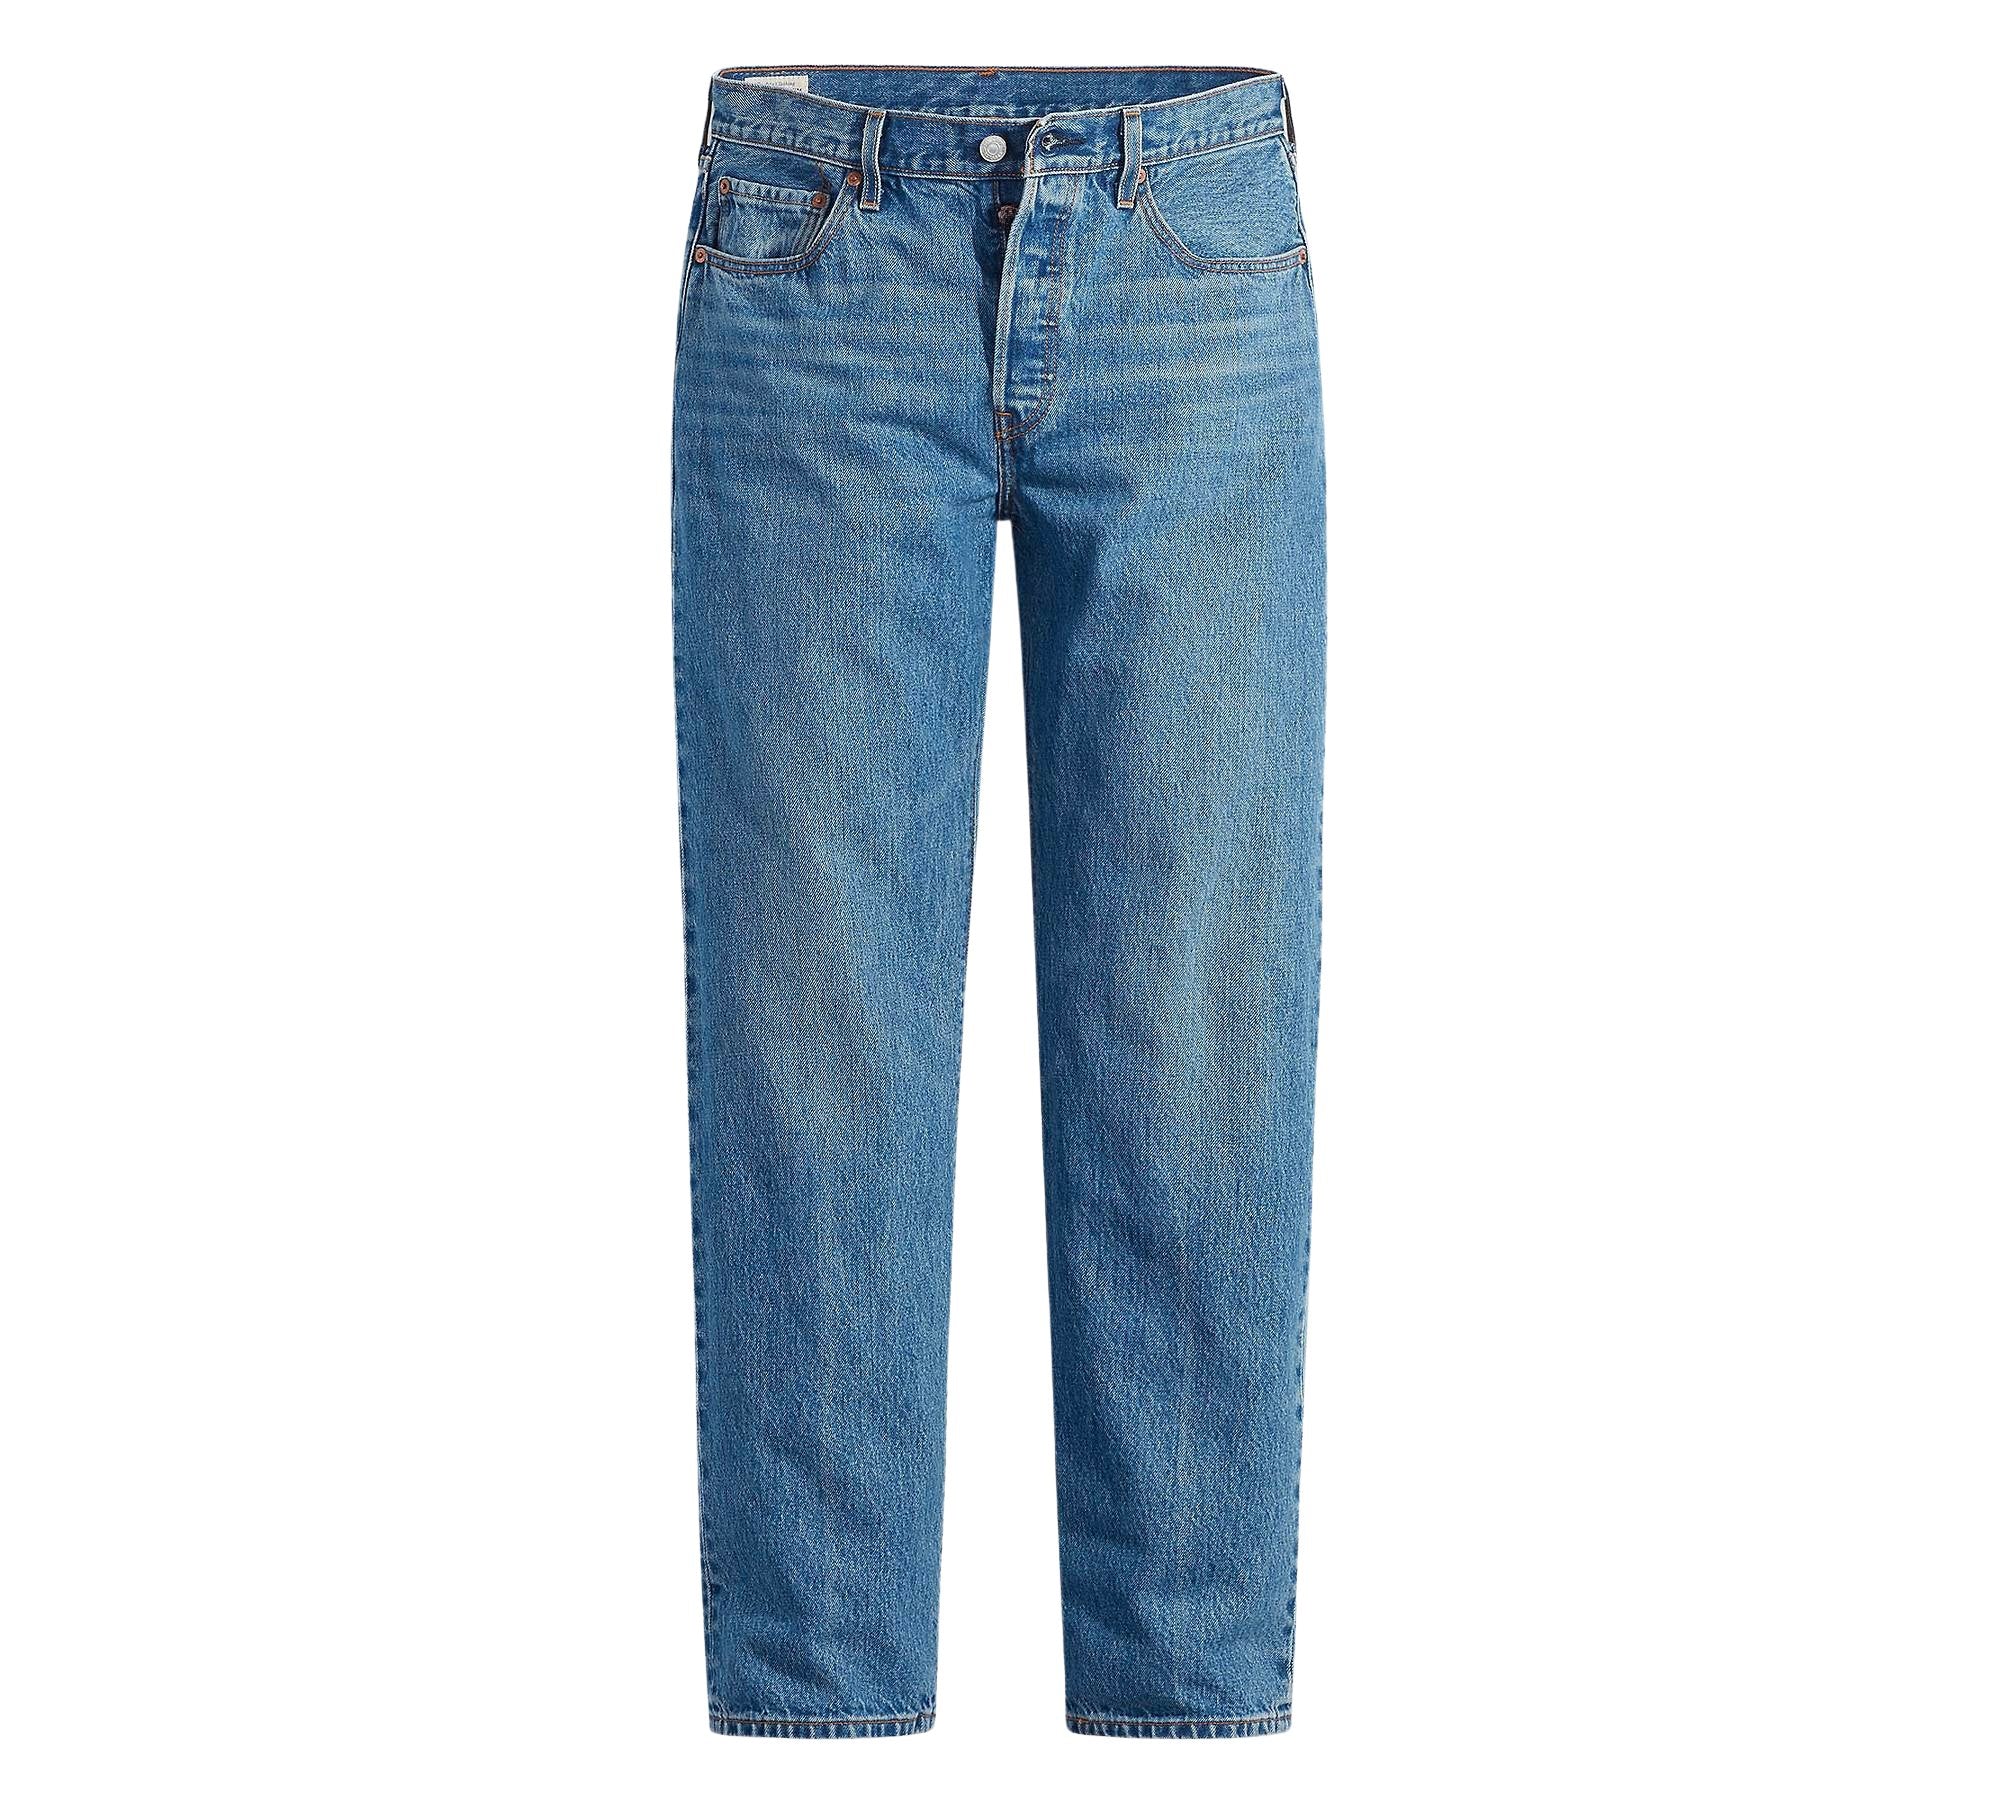 Vintage Levi's Classic Blue Jeans - Waist 32 - Length 32 - Vintage Superstore Online